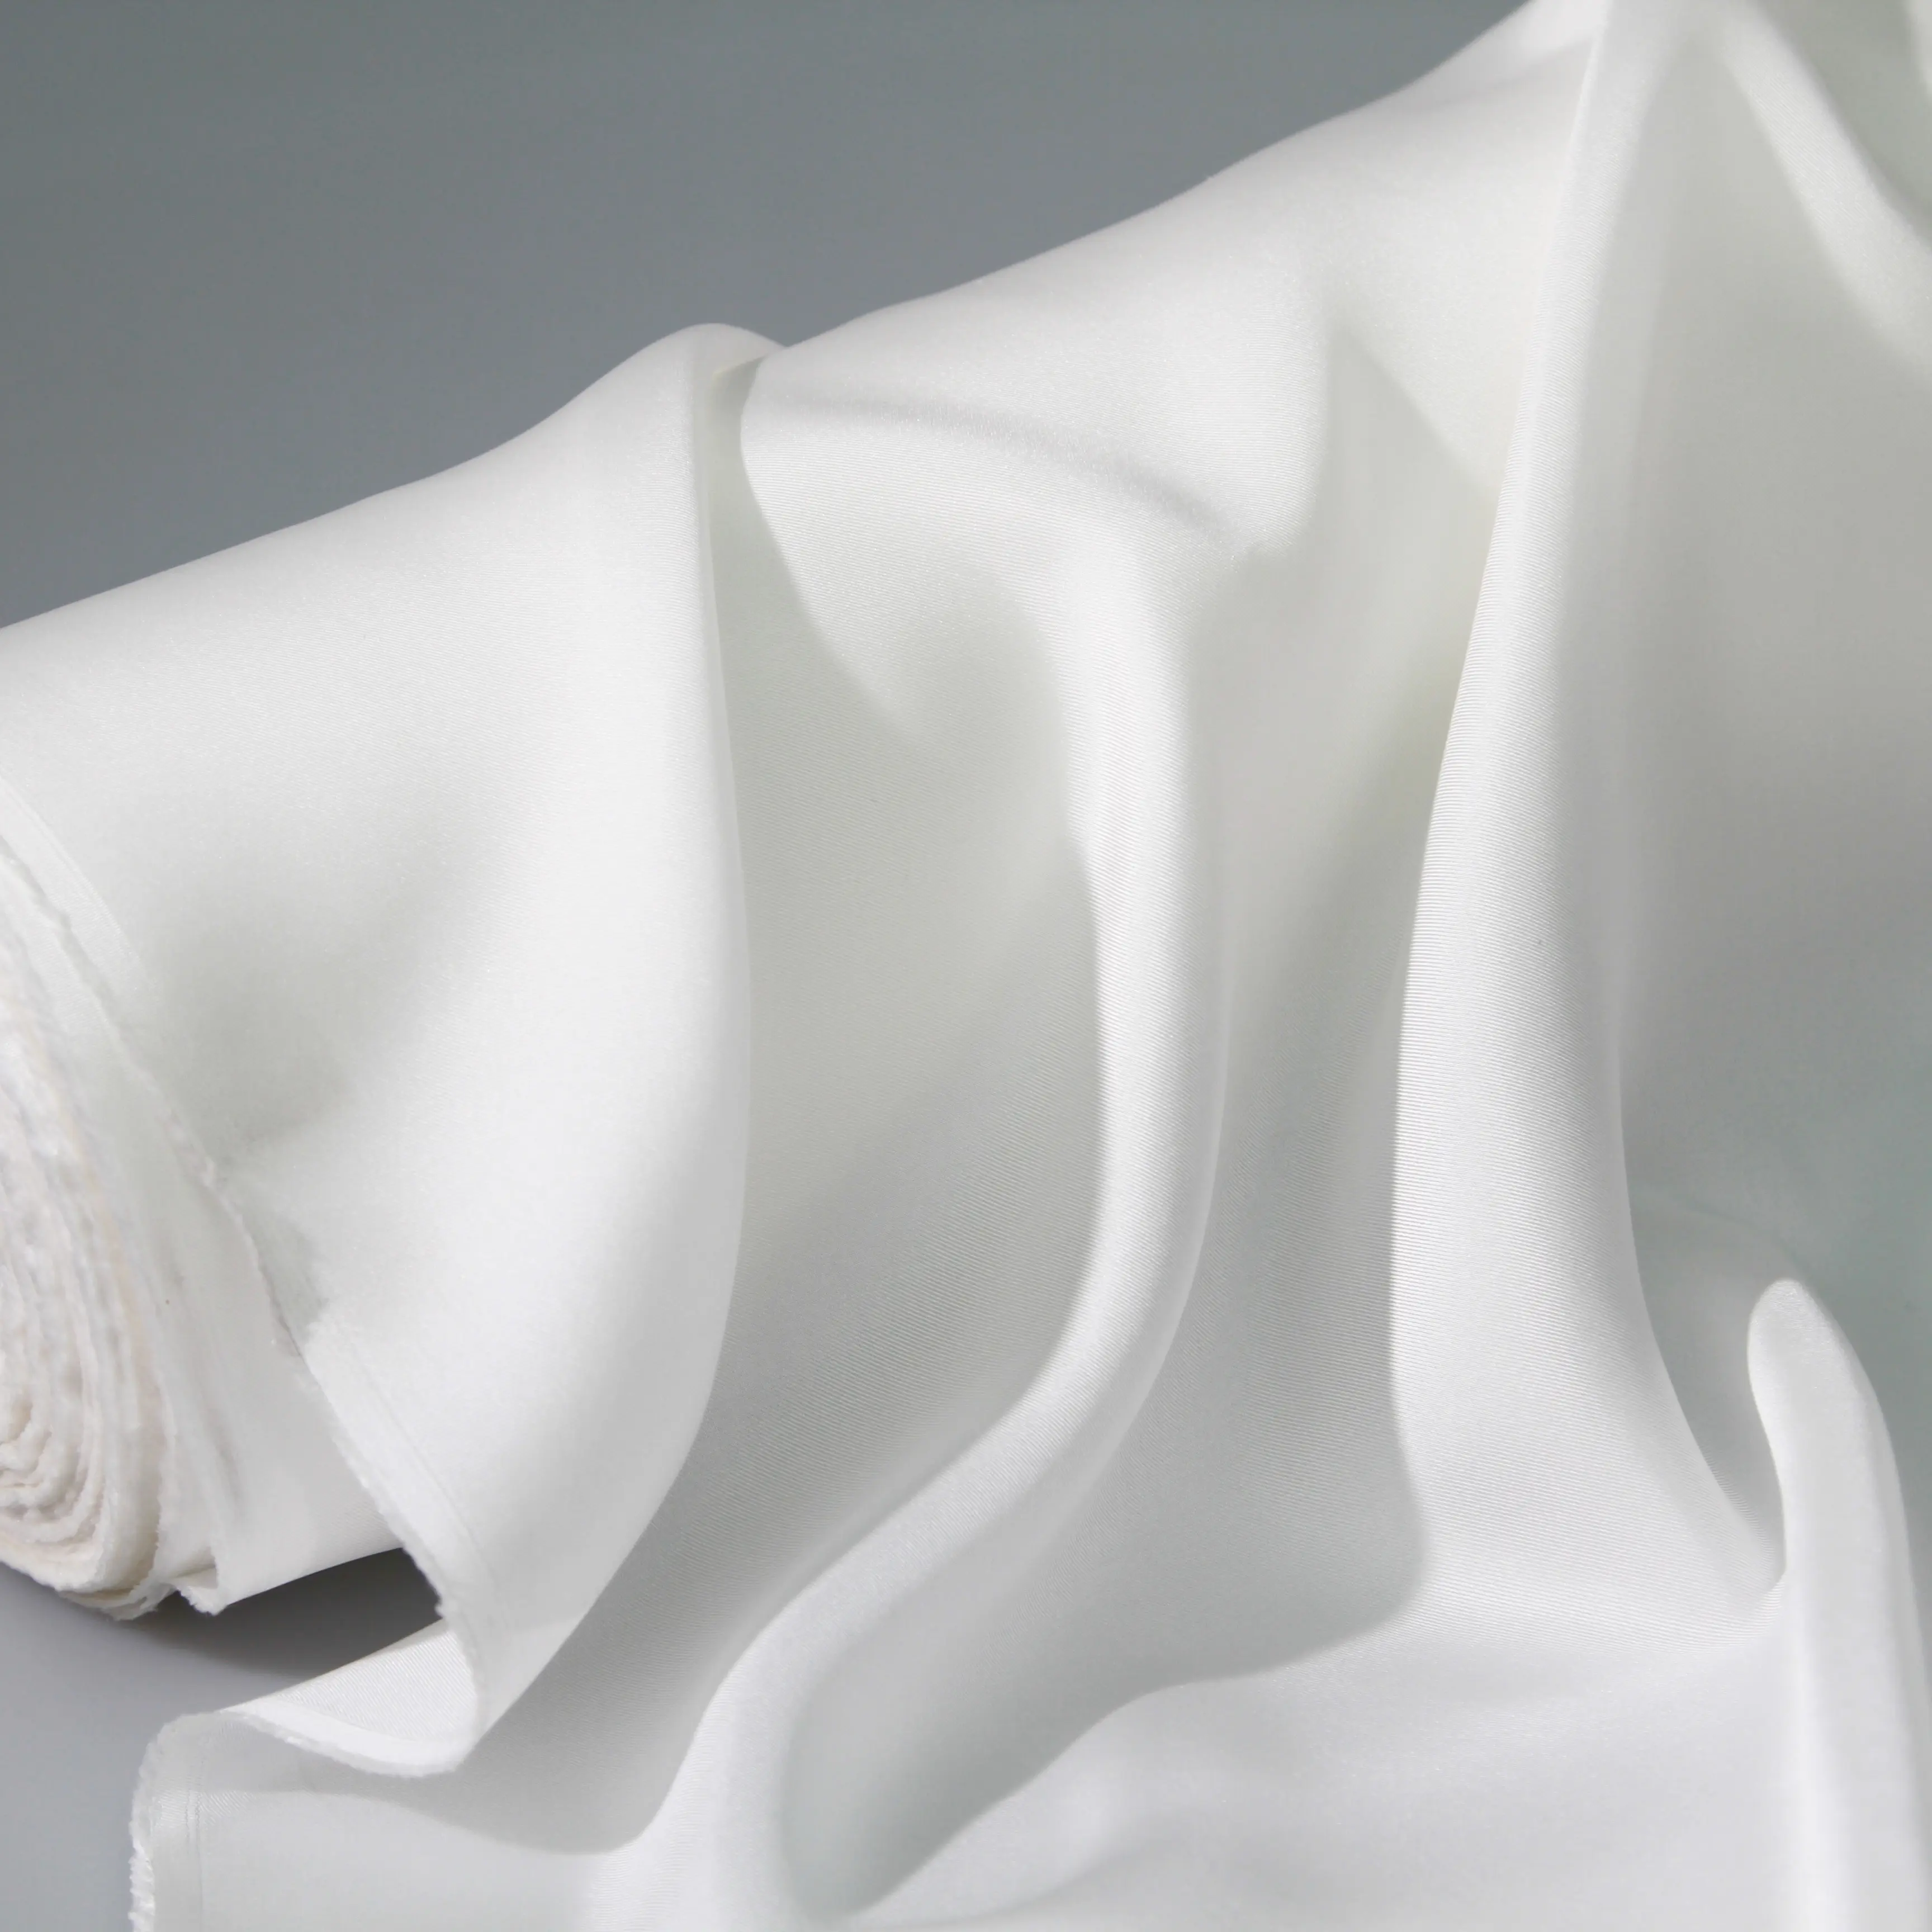 Tissu en soie sergé blanche pure 100%, 20 m 19004B, tissu personnalisable en soie mûre